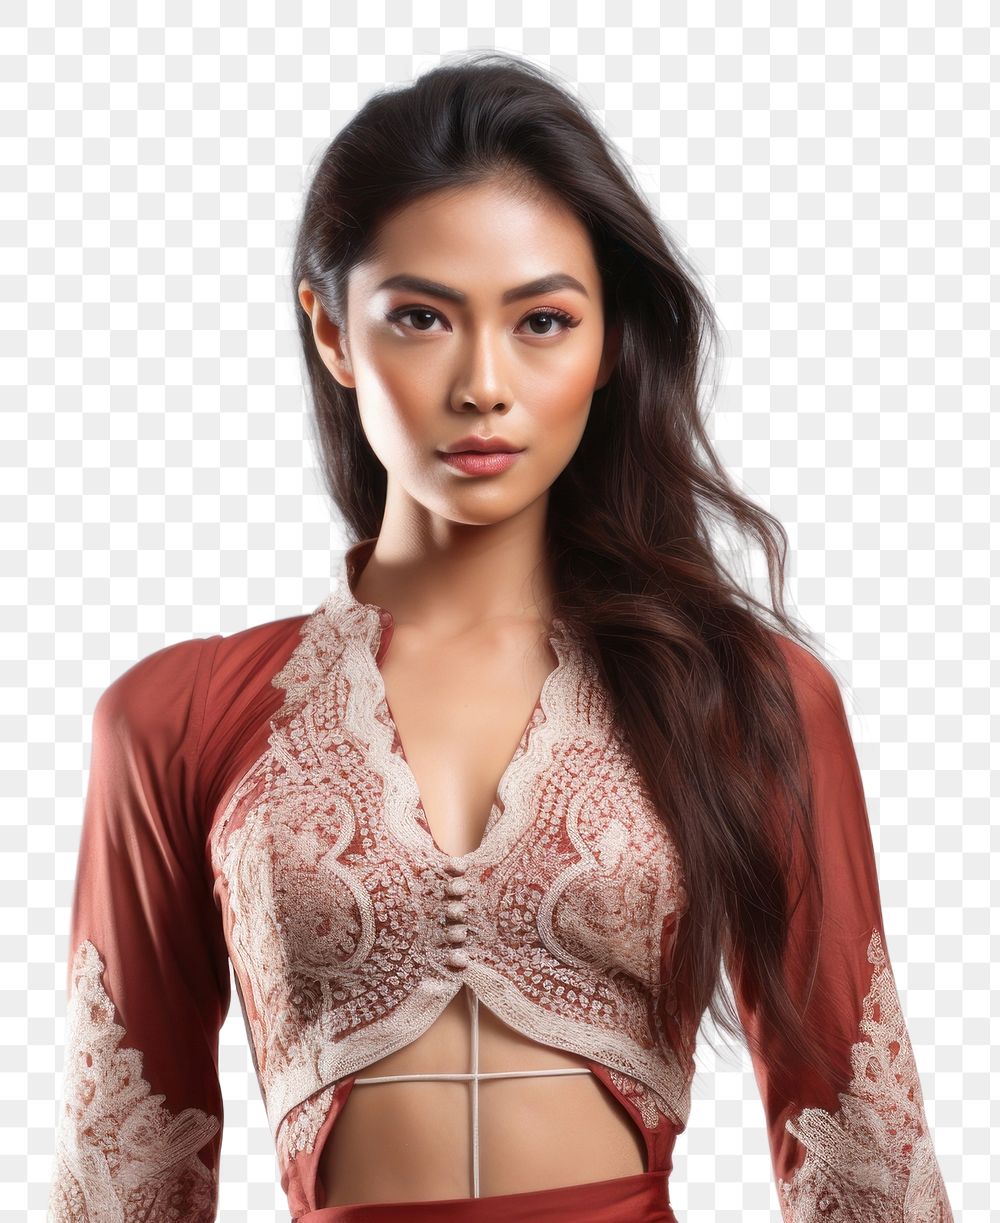 PNG Southeast asian model chic clothes lingerie portrait adult.